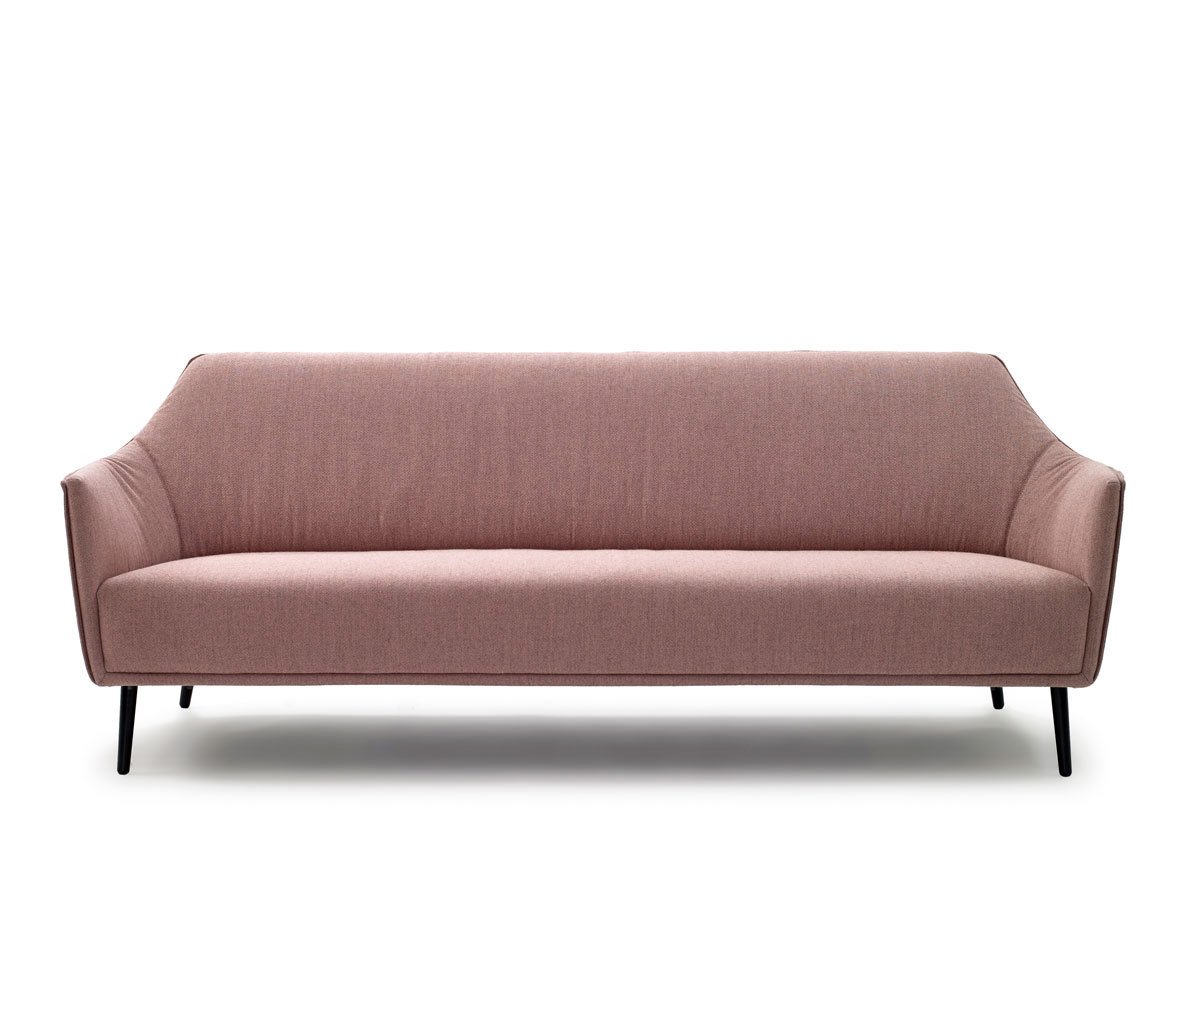 Ell-sohva